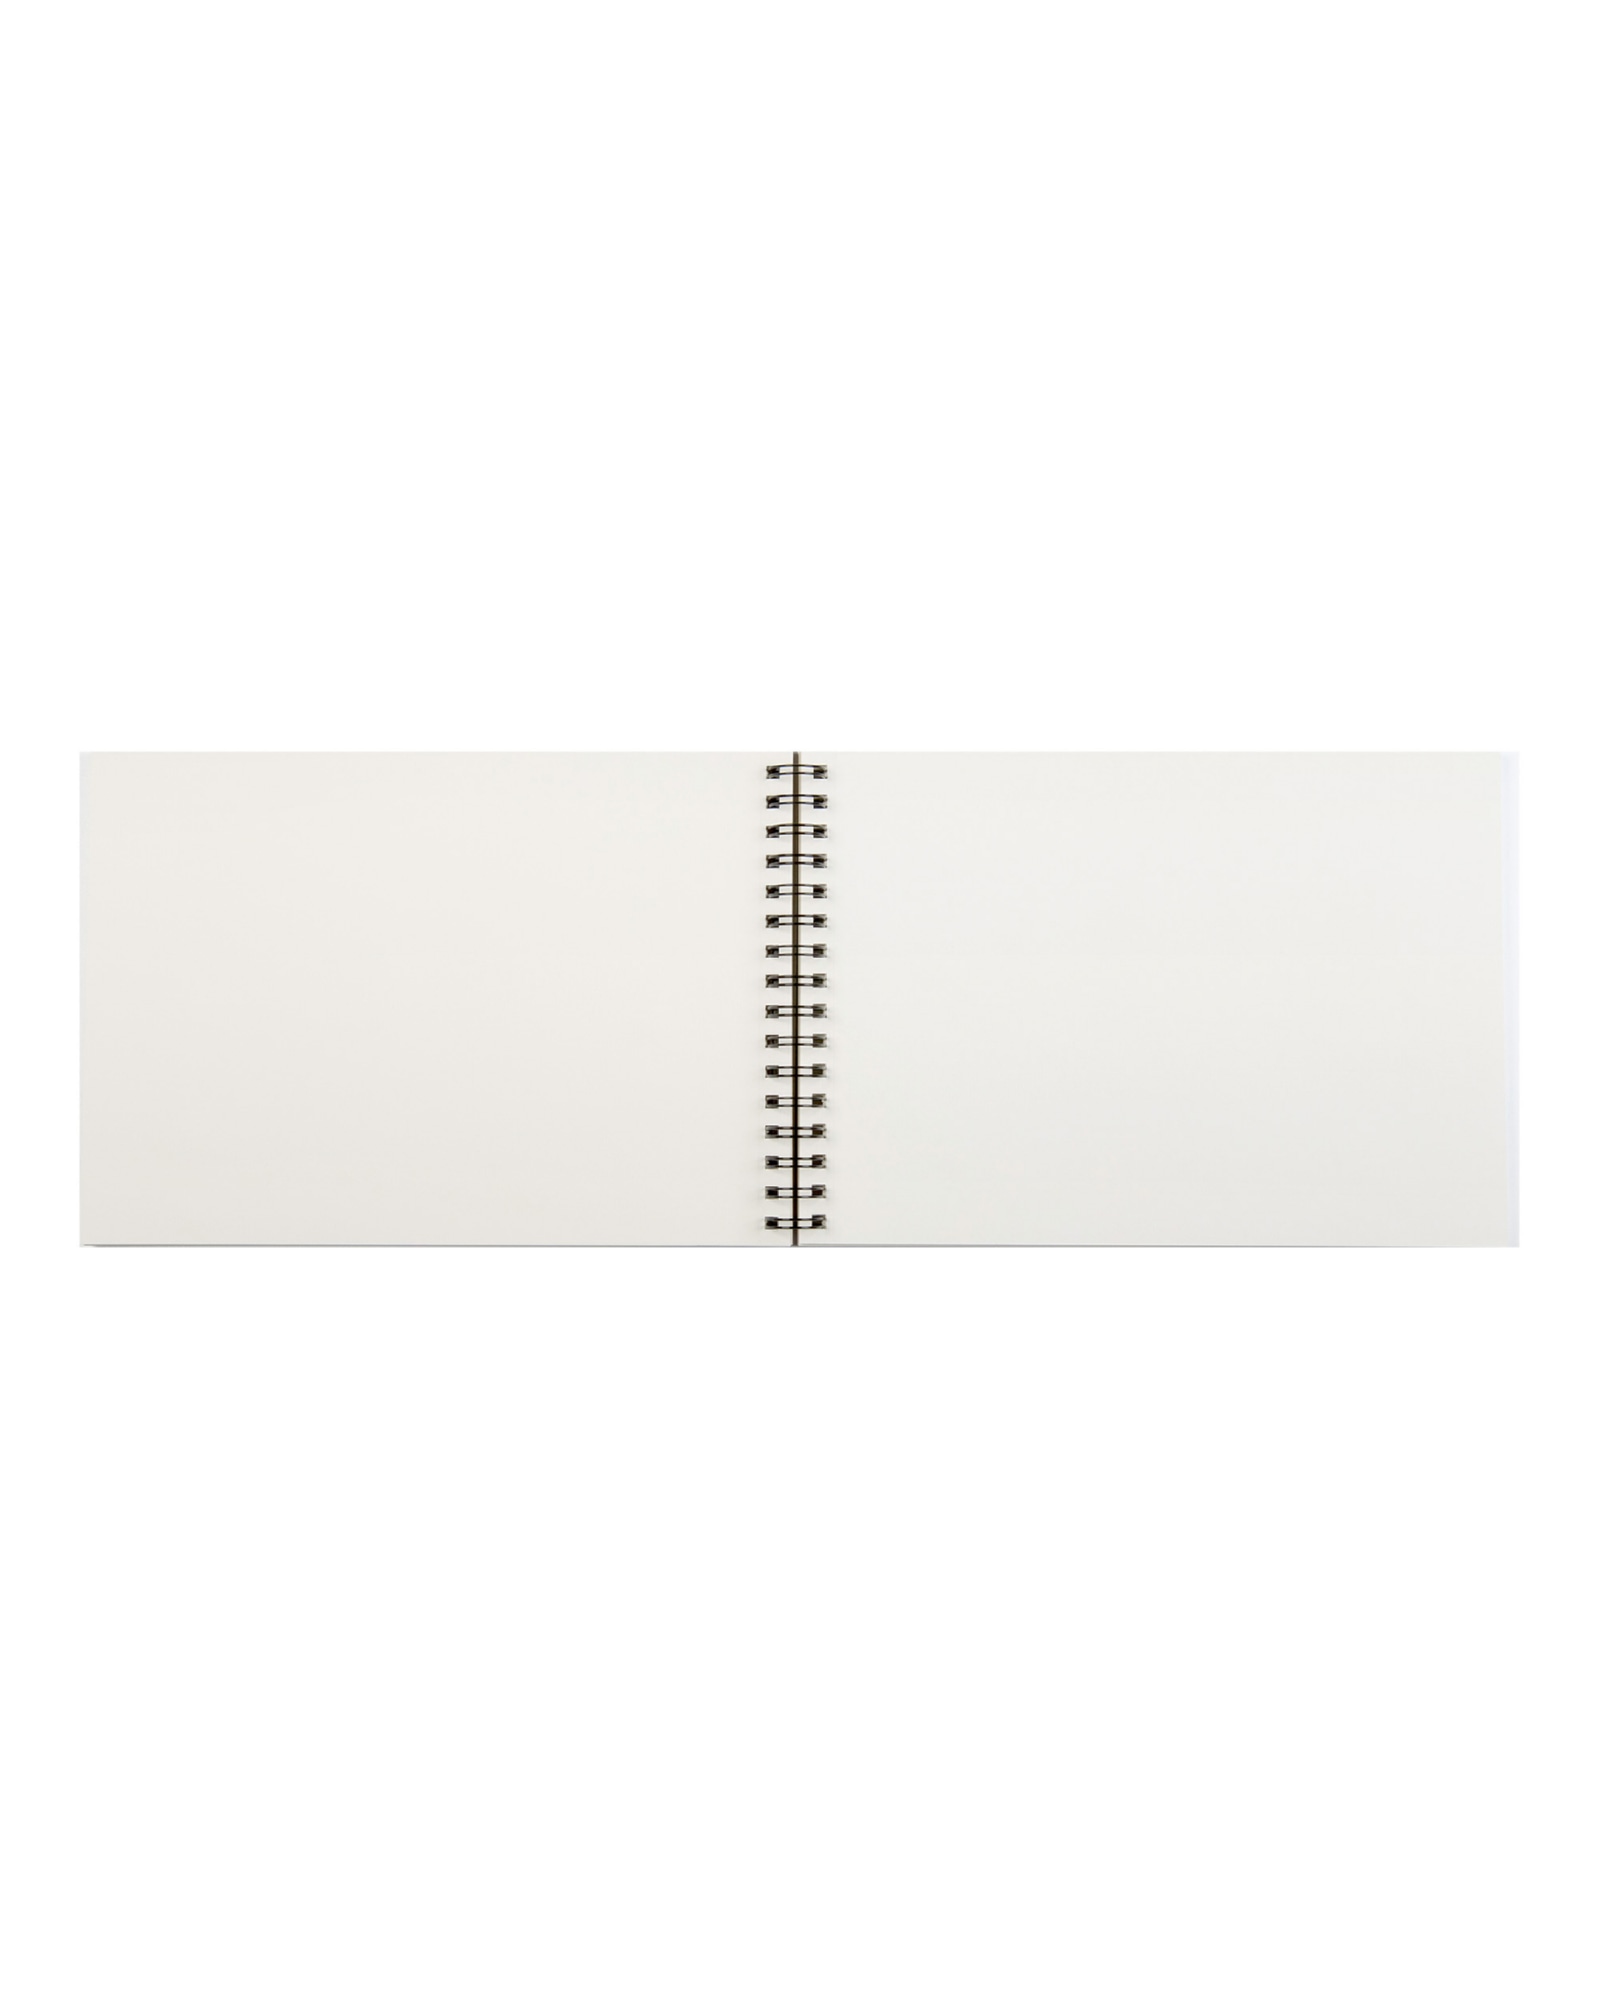 Альбом для пастели Ingres 90г/м.кв 21x29,7см белая бумага 100л спираль по короткой стороне